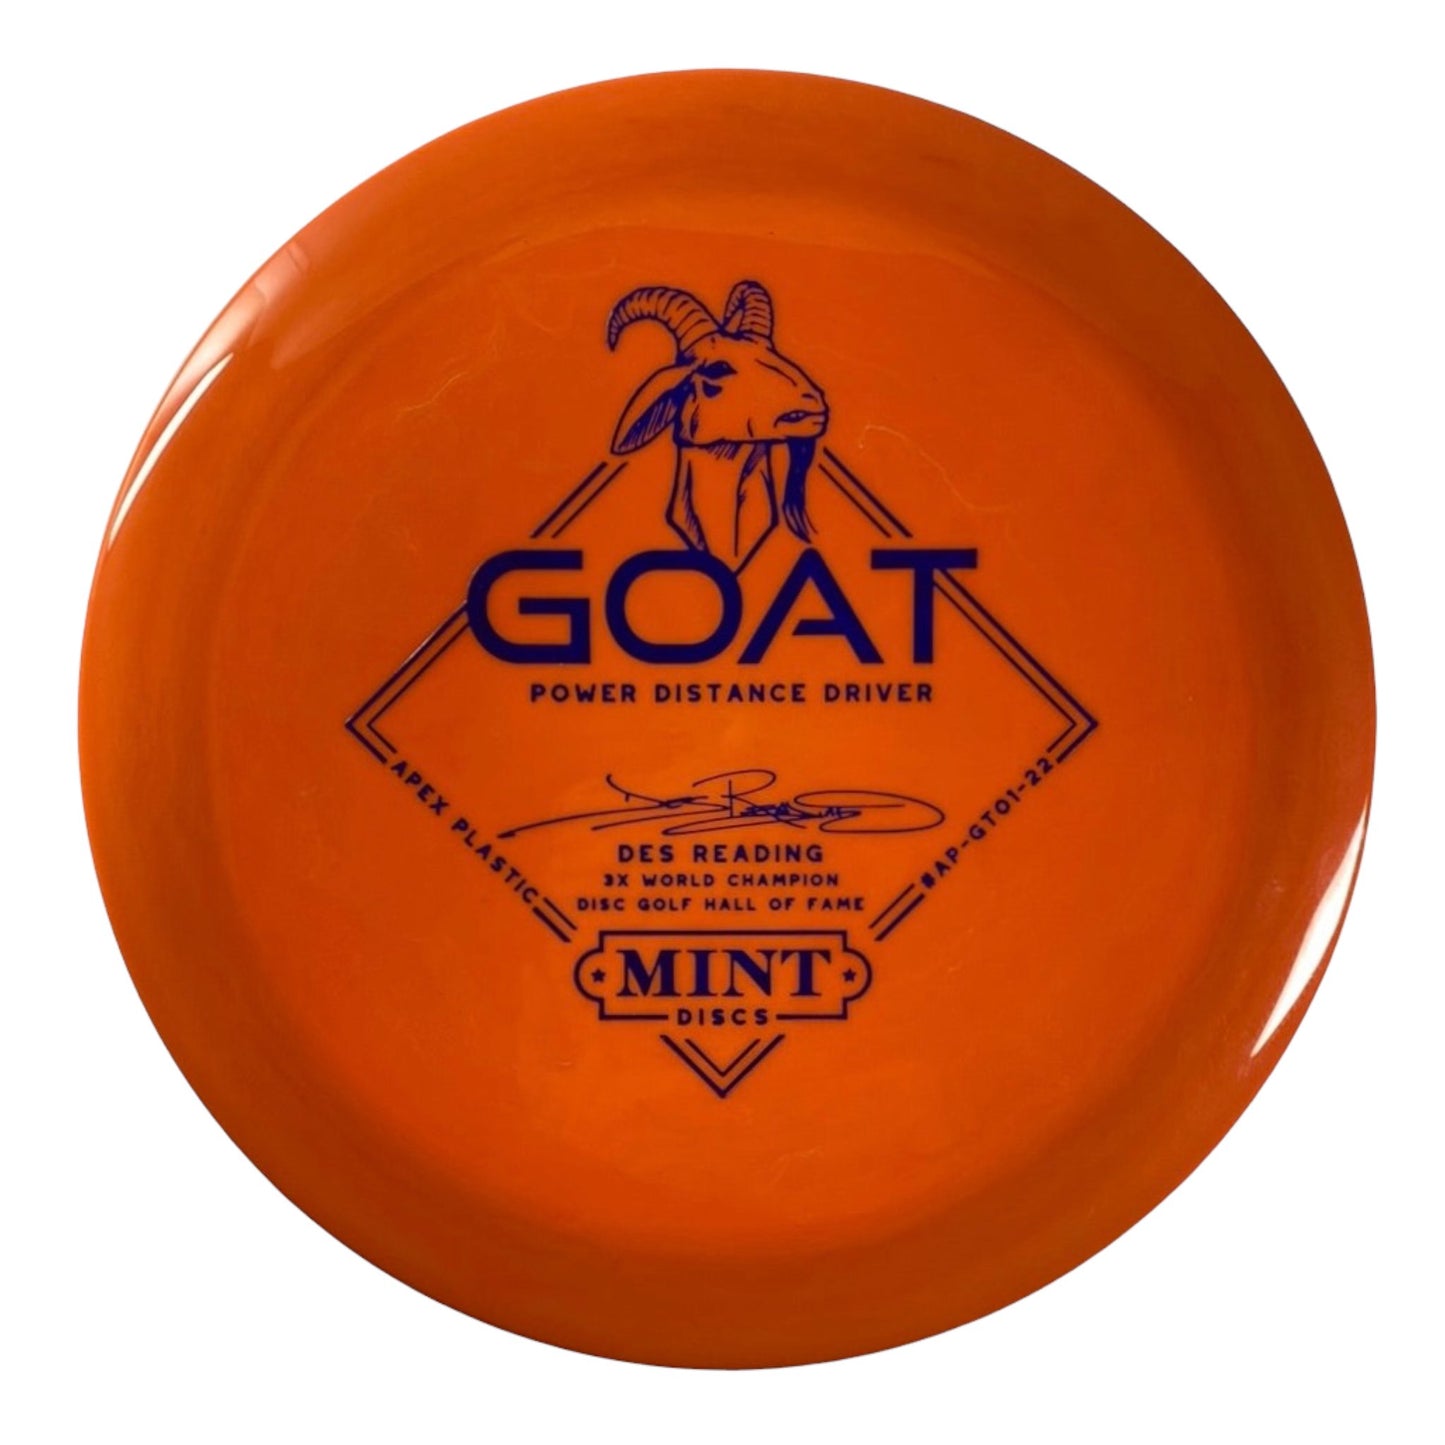 Mint Discs Goat | Apex | Orange/Blue 168-169g (Des Reading) Disc Golf